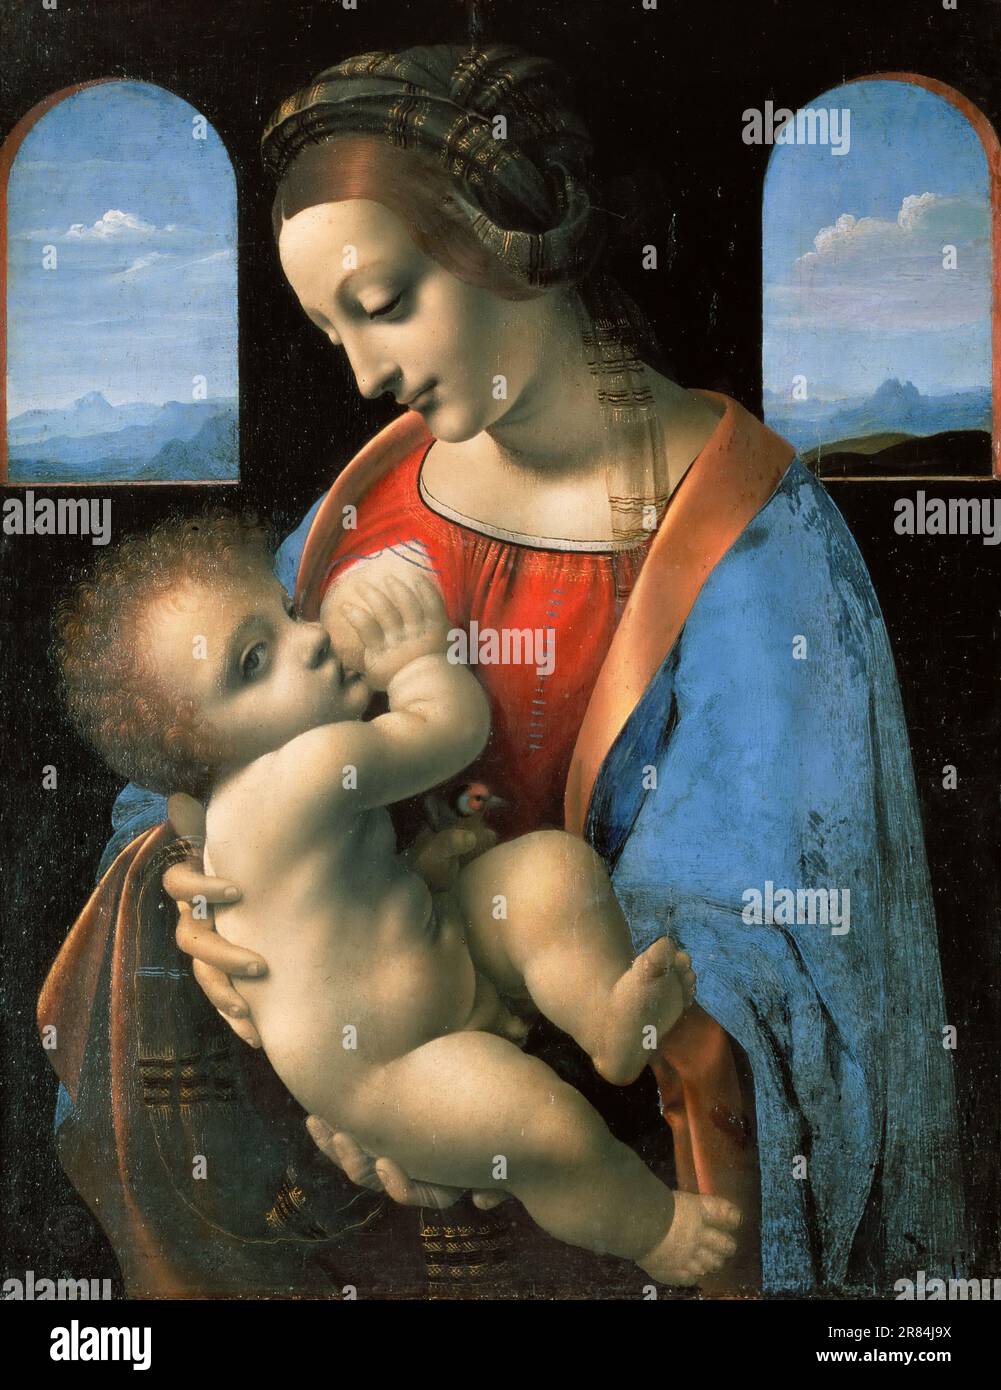 Leonardo da Vinci - Madonna Litta - raffigura la Vergine Maria che allatta il Cristo bambino, un soggetto devozionale conosciuto come la Madonna lattans. Foto Stock